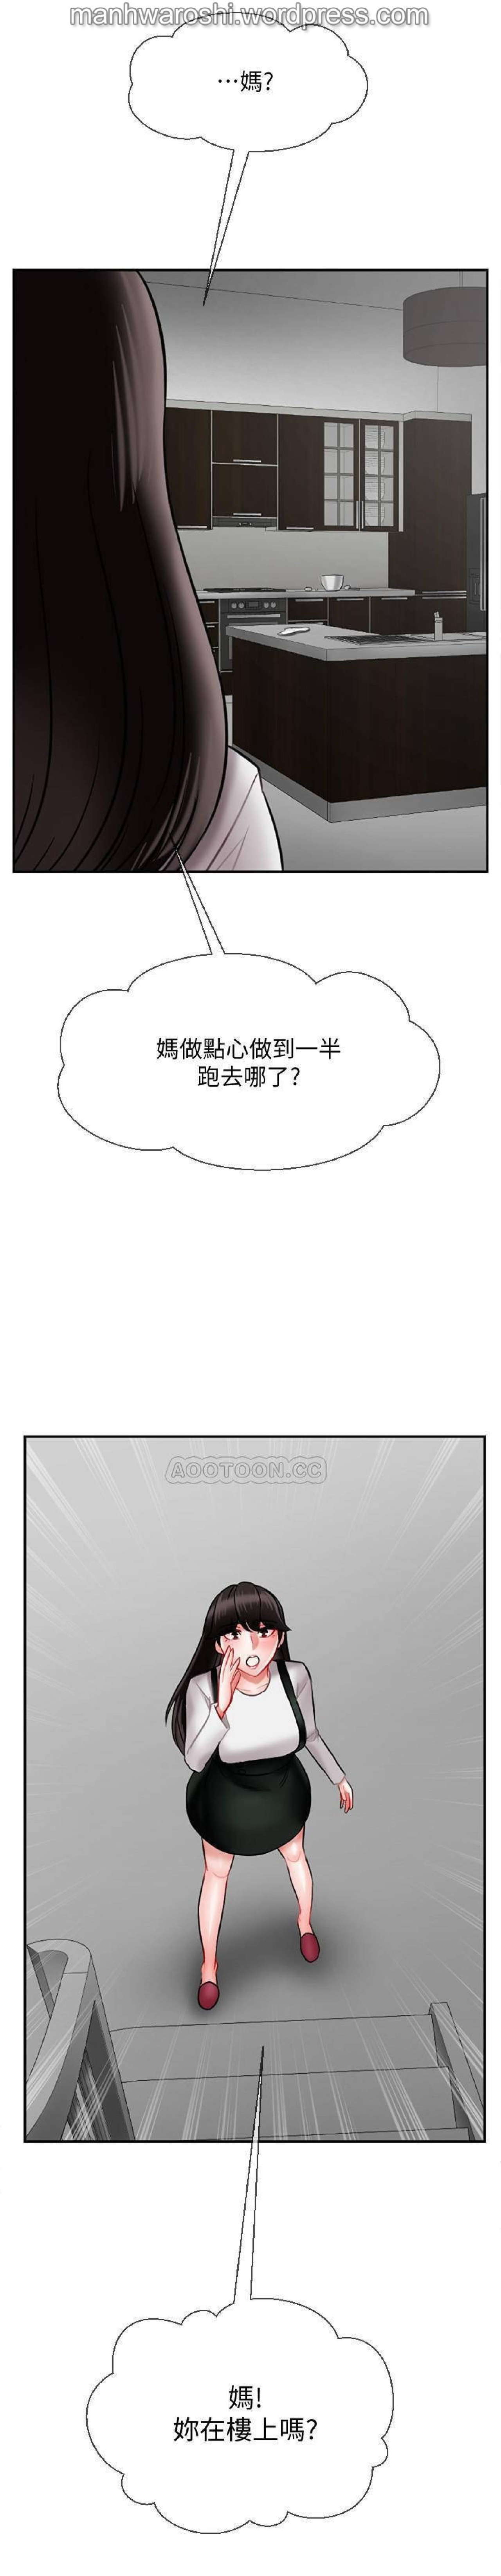 坏老师 | PHYSICAL CLASSROOM 17 [Chinese] Manhwa 